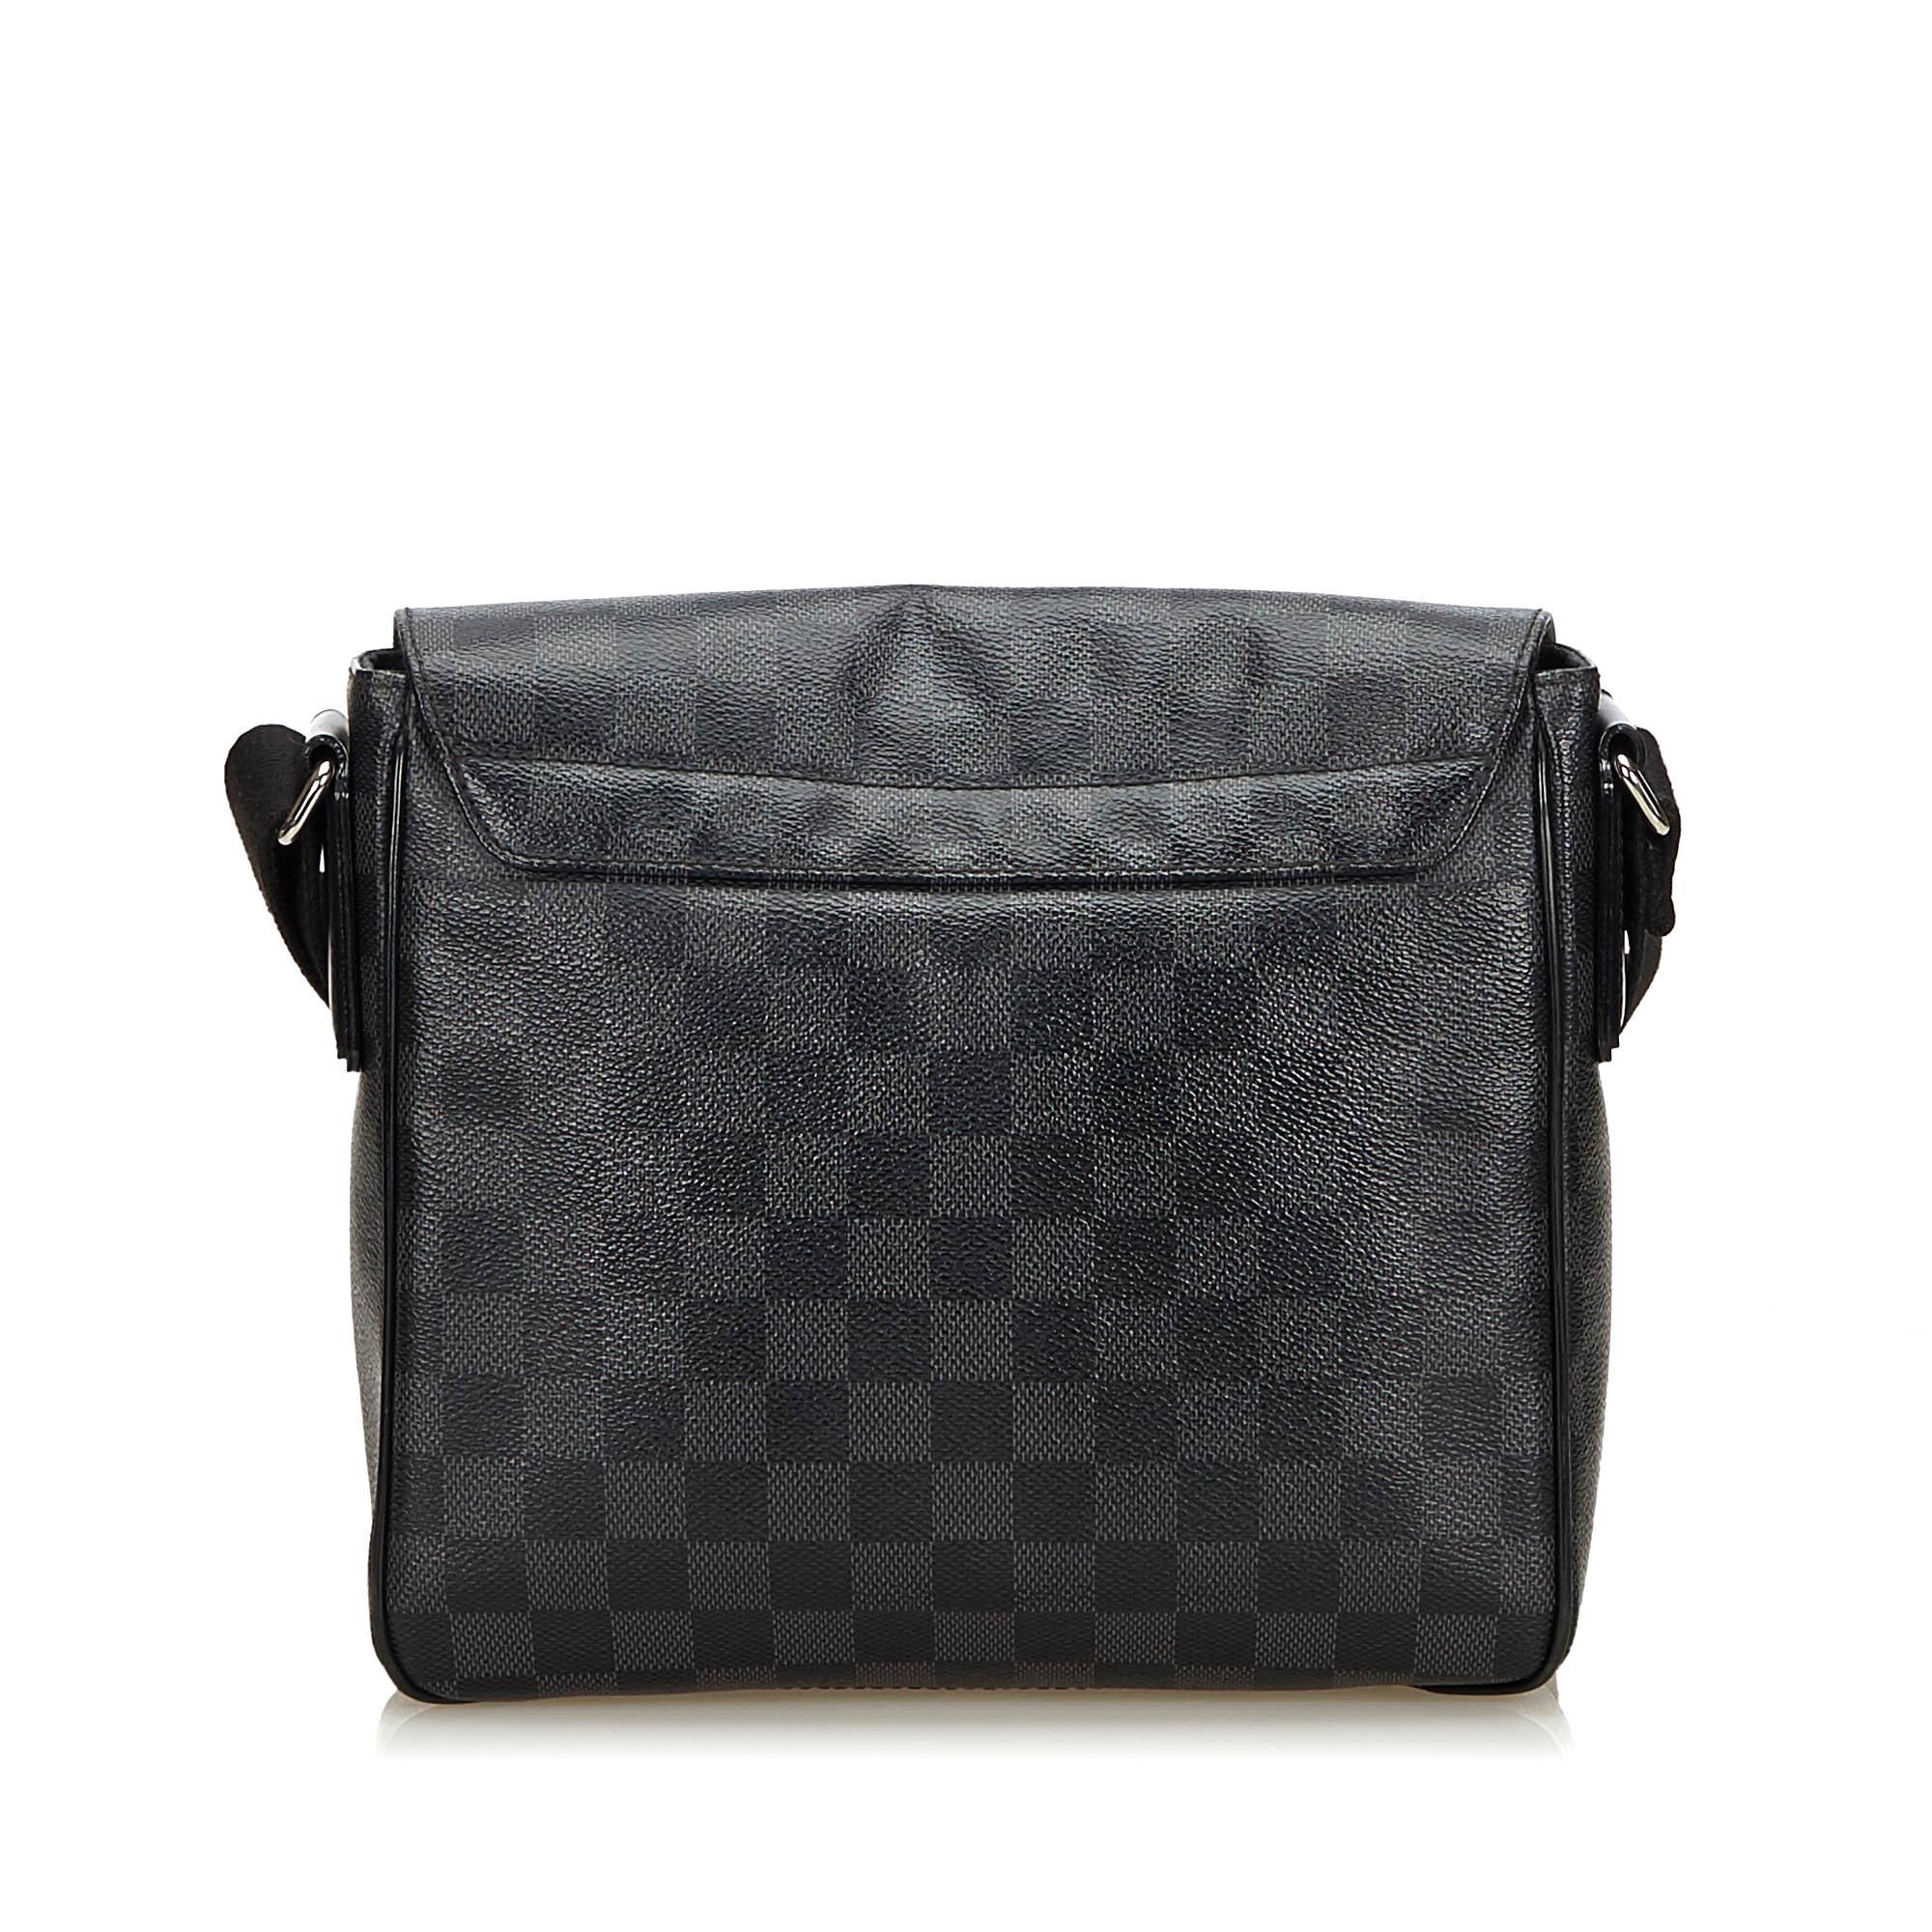 Louis Vuitton Damier Graphite Canvas District Pm Bag in Black - Lyst